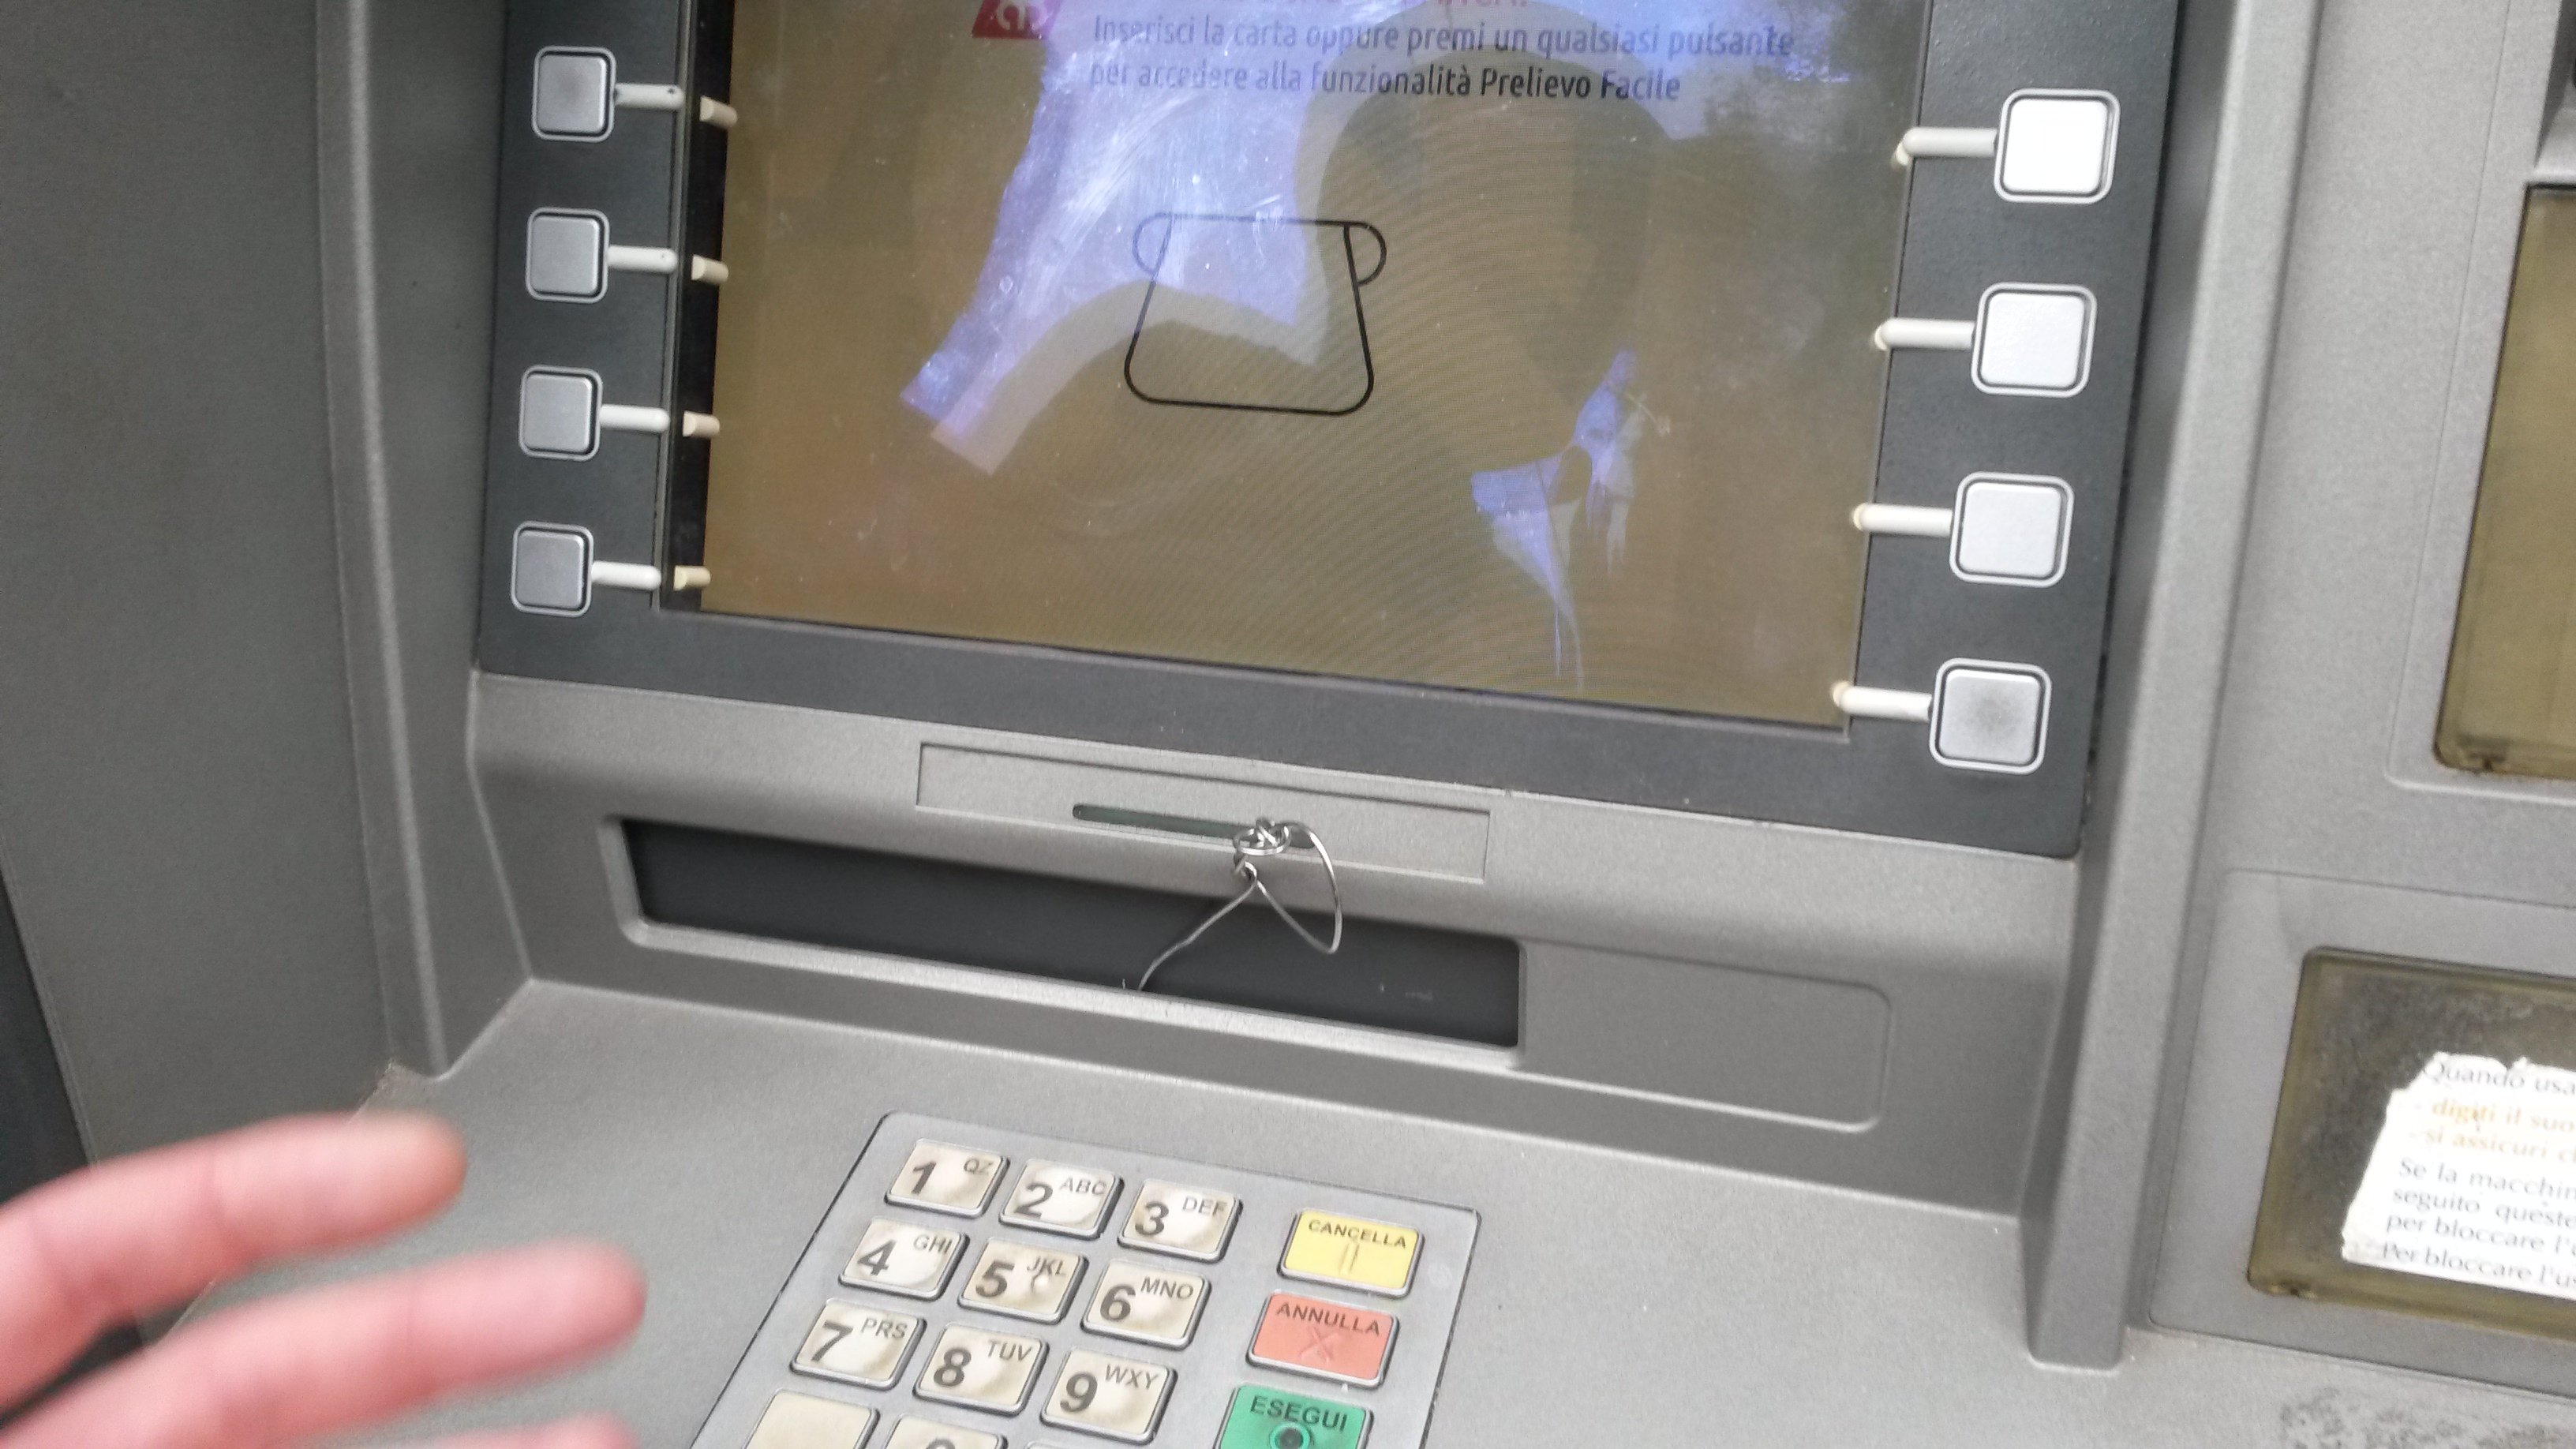 Col metodo “forchetta” manomettevano i bancomat per intascare i soldi